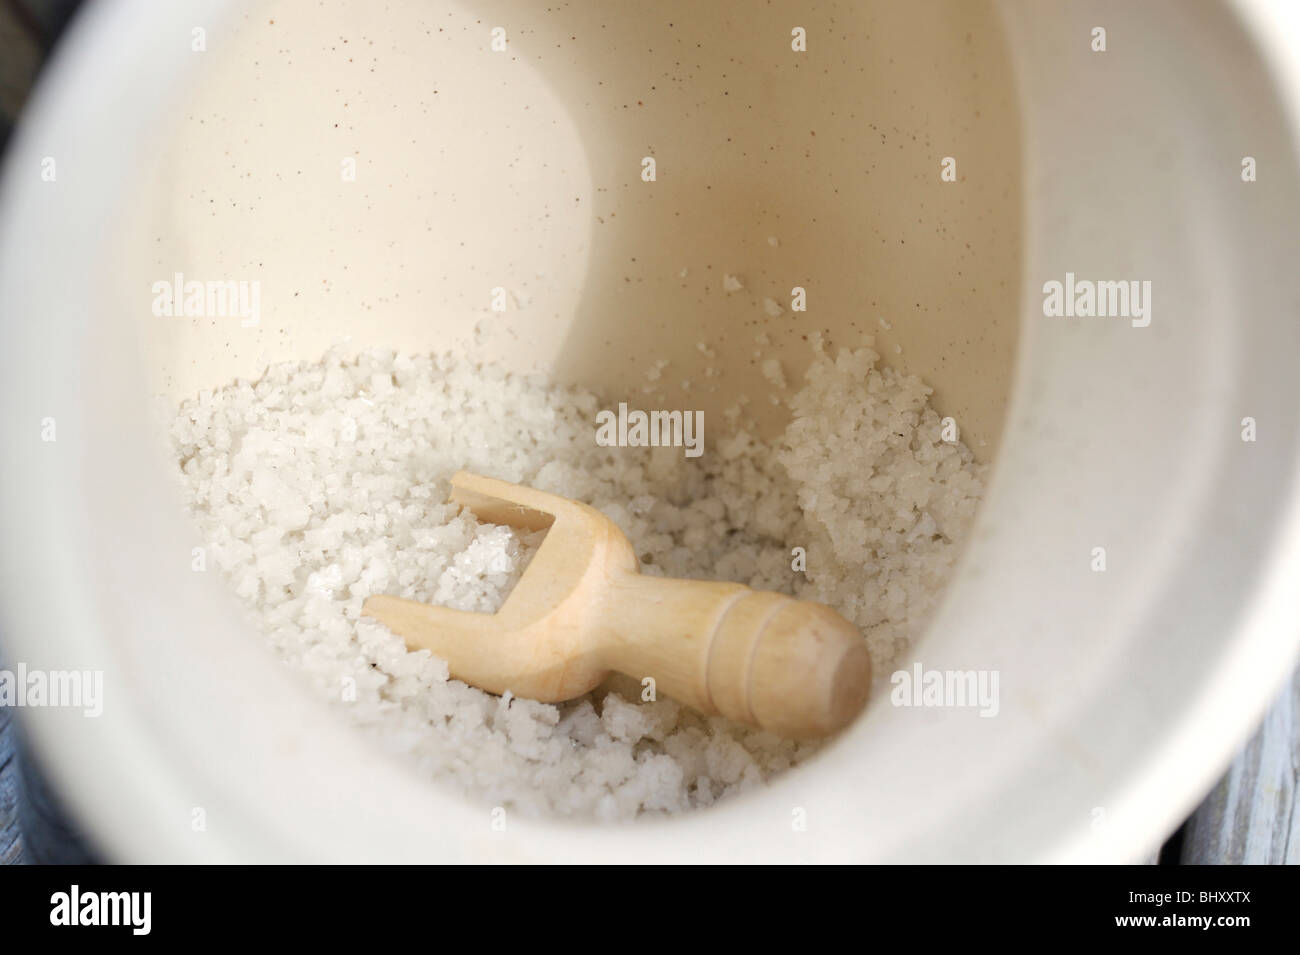 Le sel de mer dans un récipient avec une cuillère en bois Banque D'Images